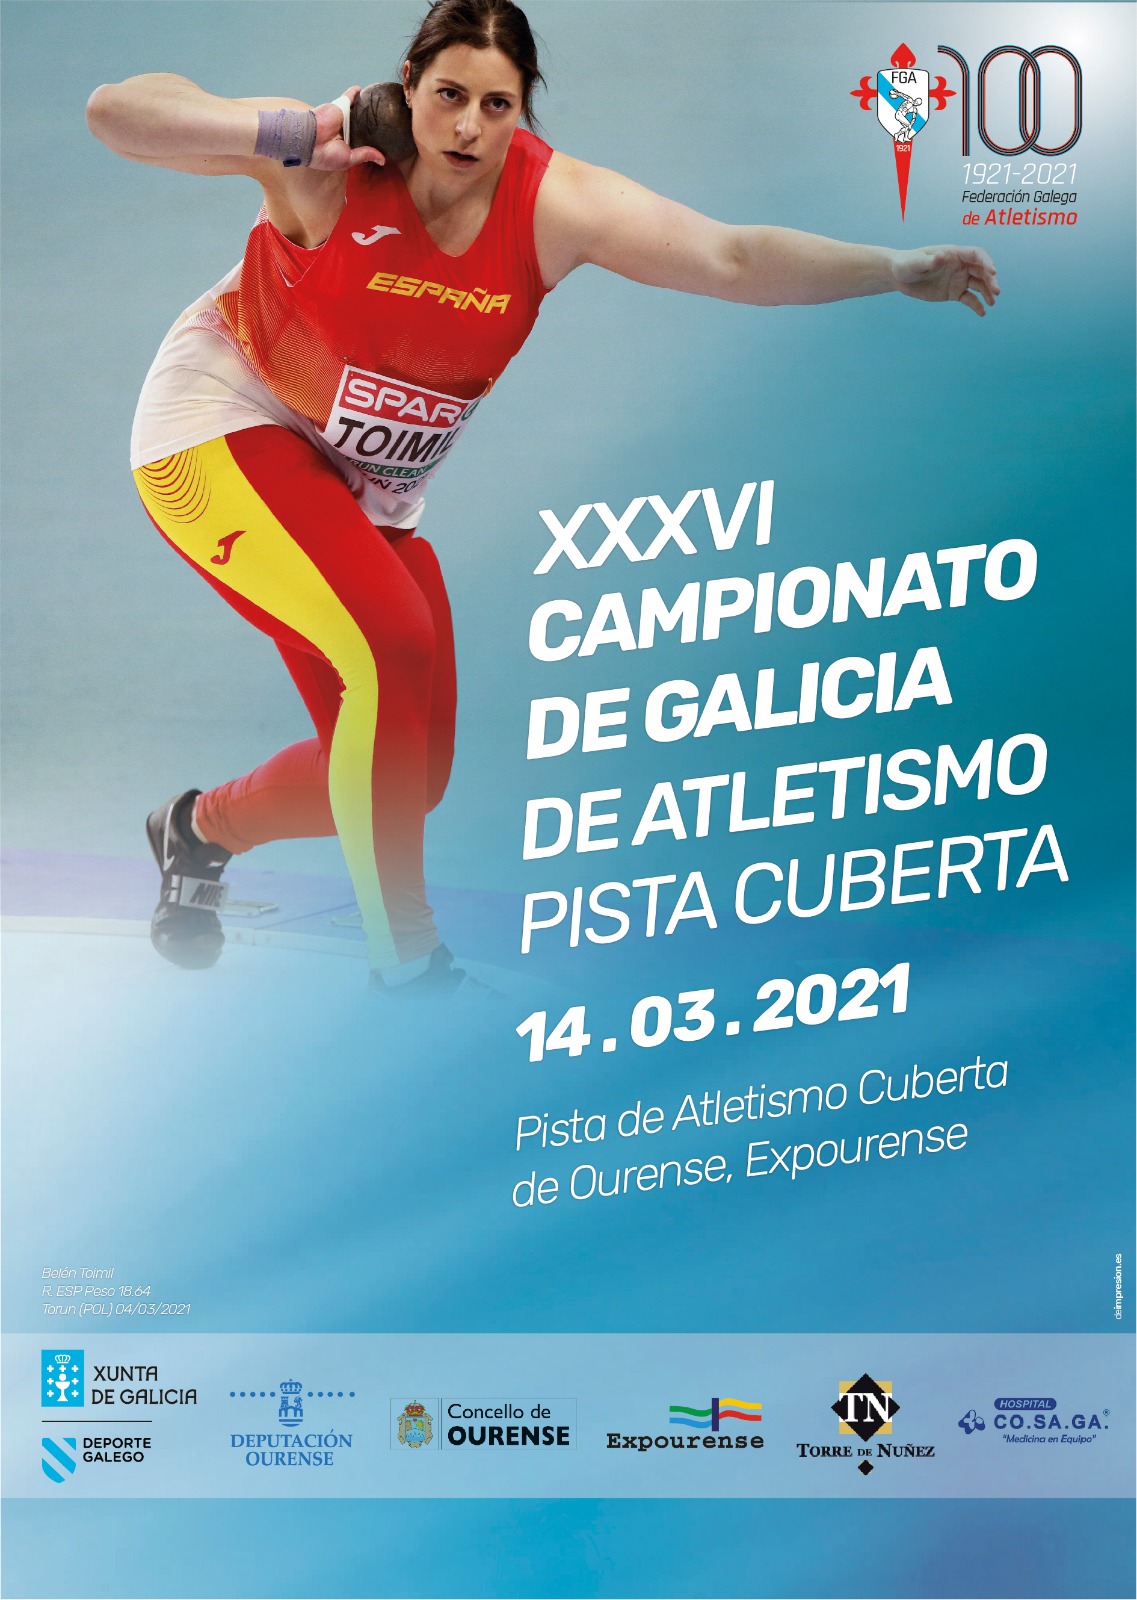 XXXVI Campionato de Galicia Absoluto en Pista Cuberta